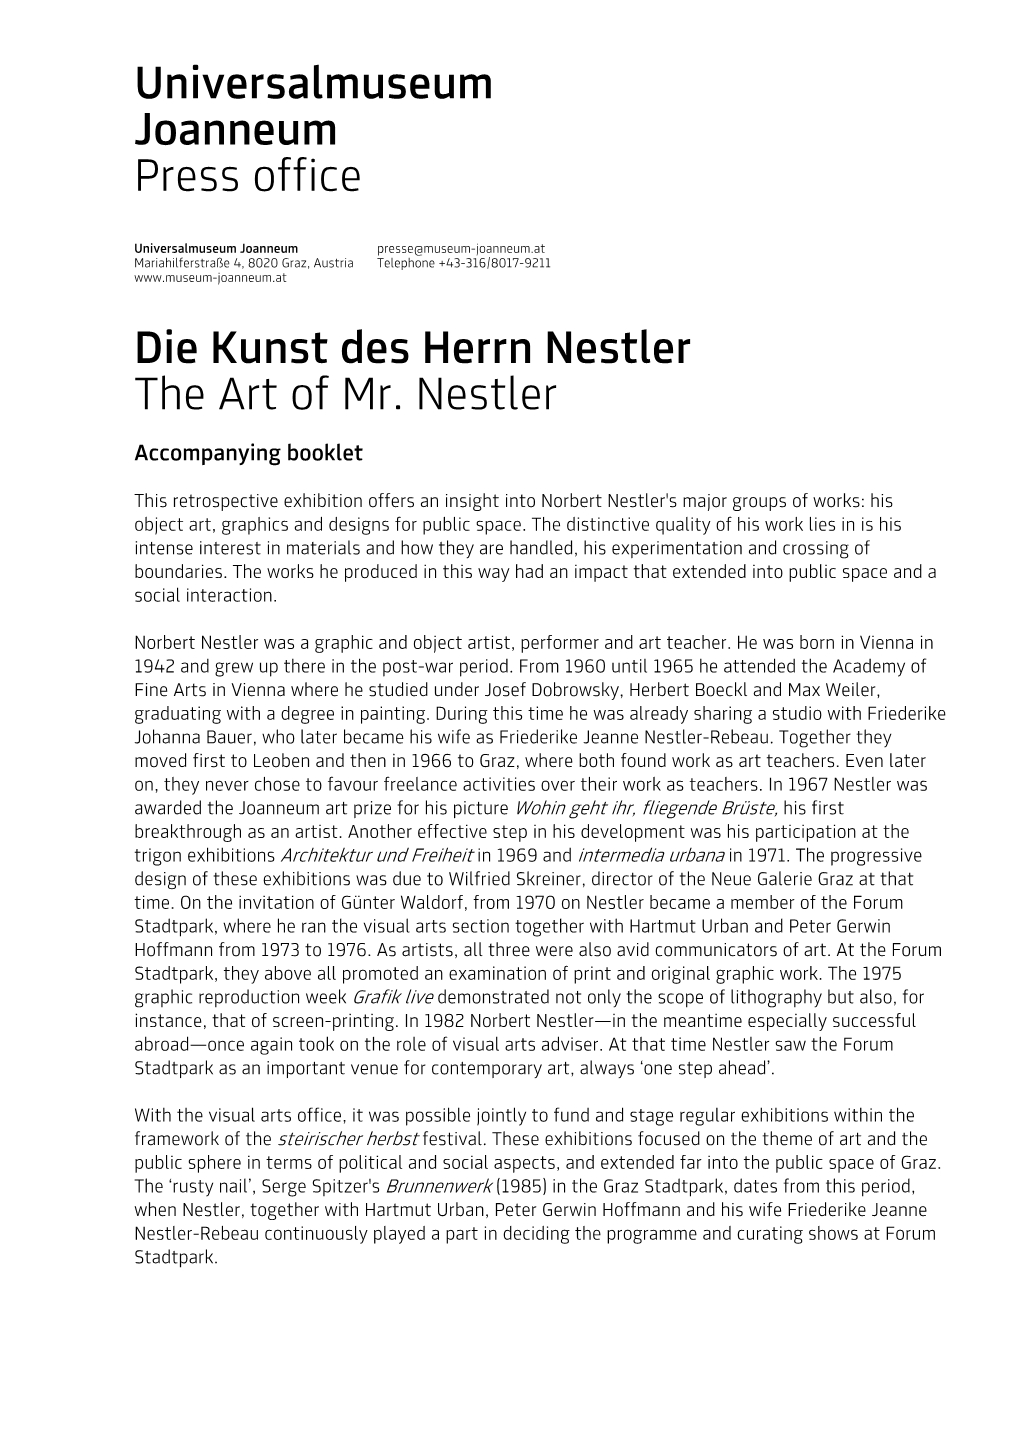 Universalmuseum Joanneum Press Office Die Kunst Des Herrn Nestler